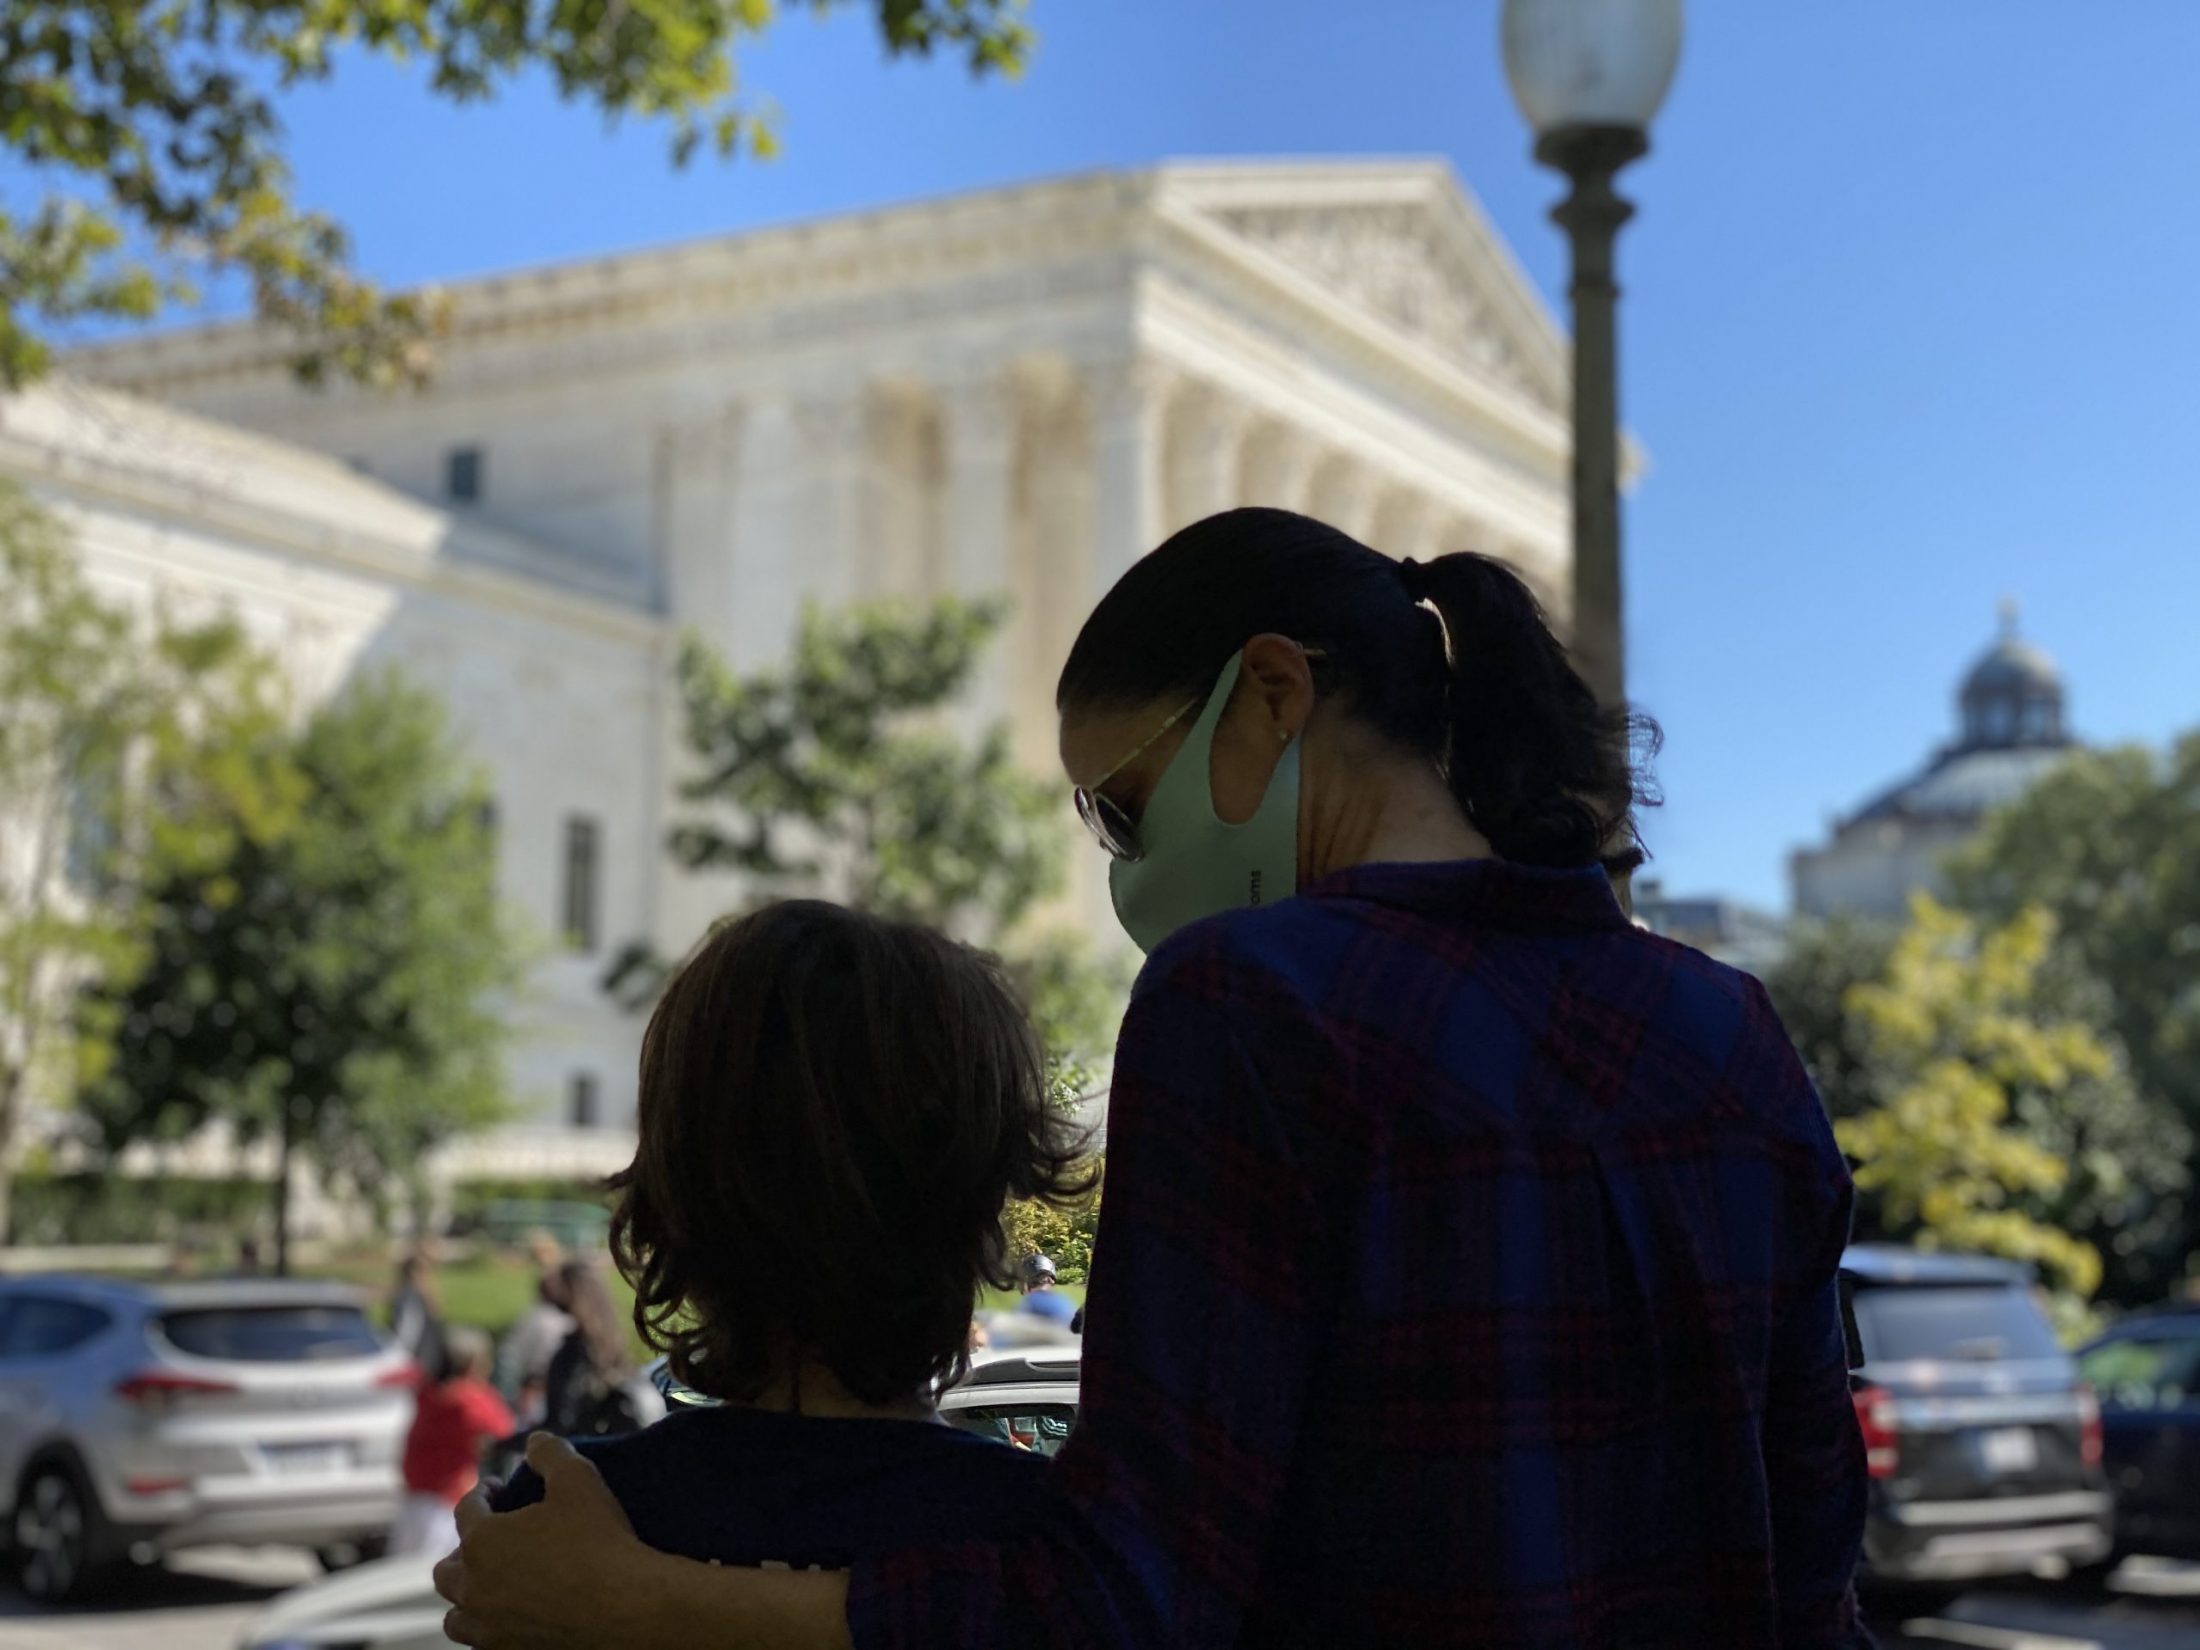 DC widow blog writer Marjorie Brimley hugs son Austin in front of Supreme Court